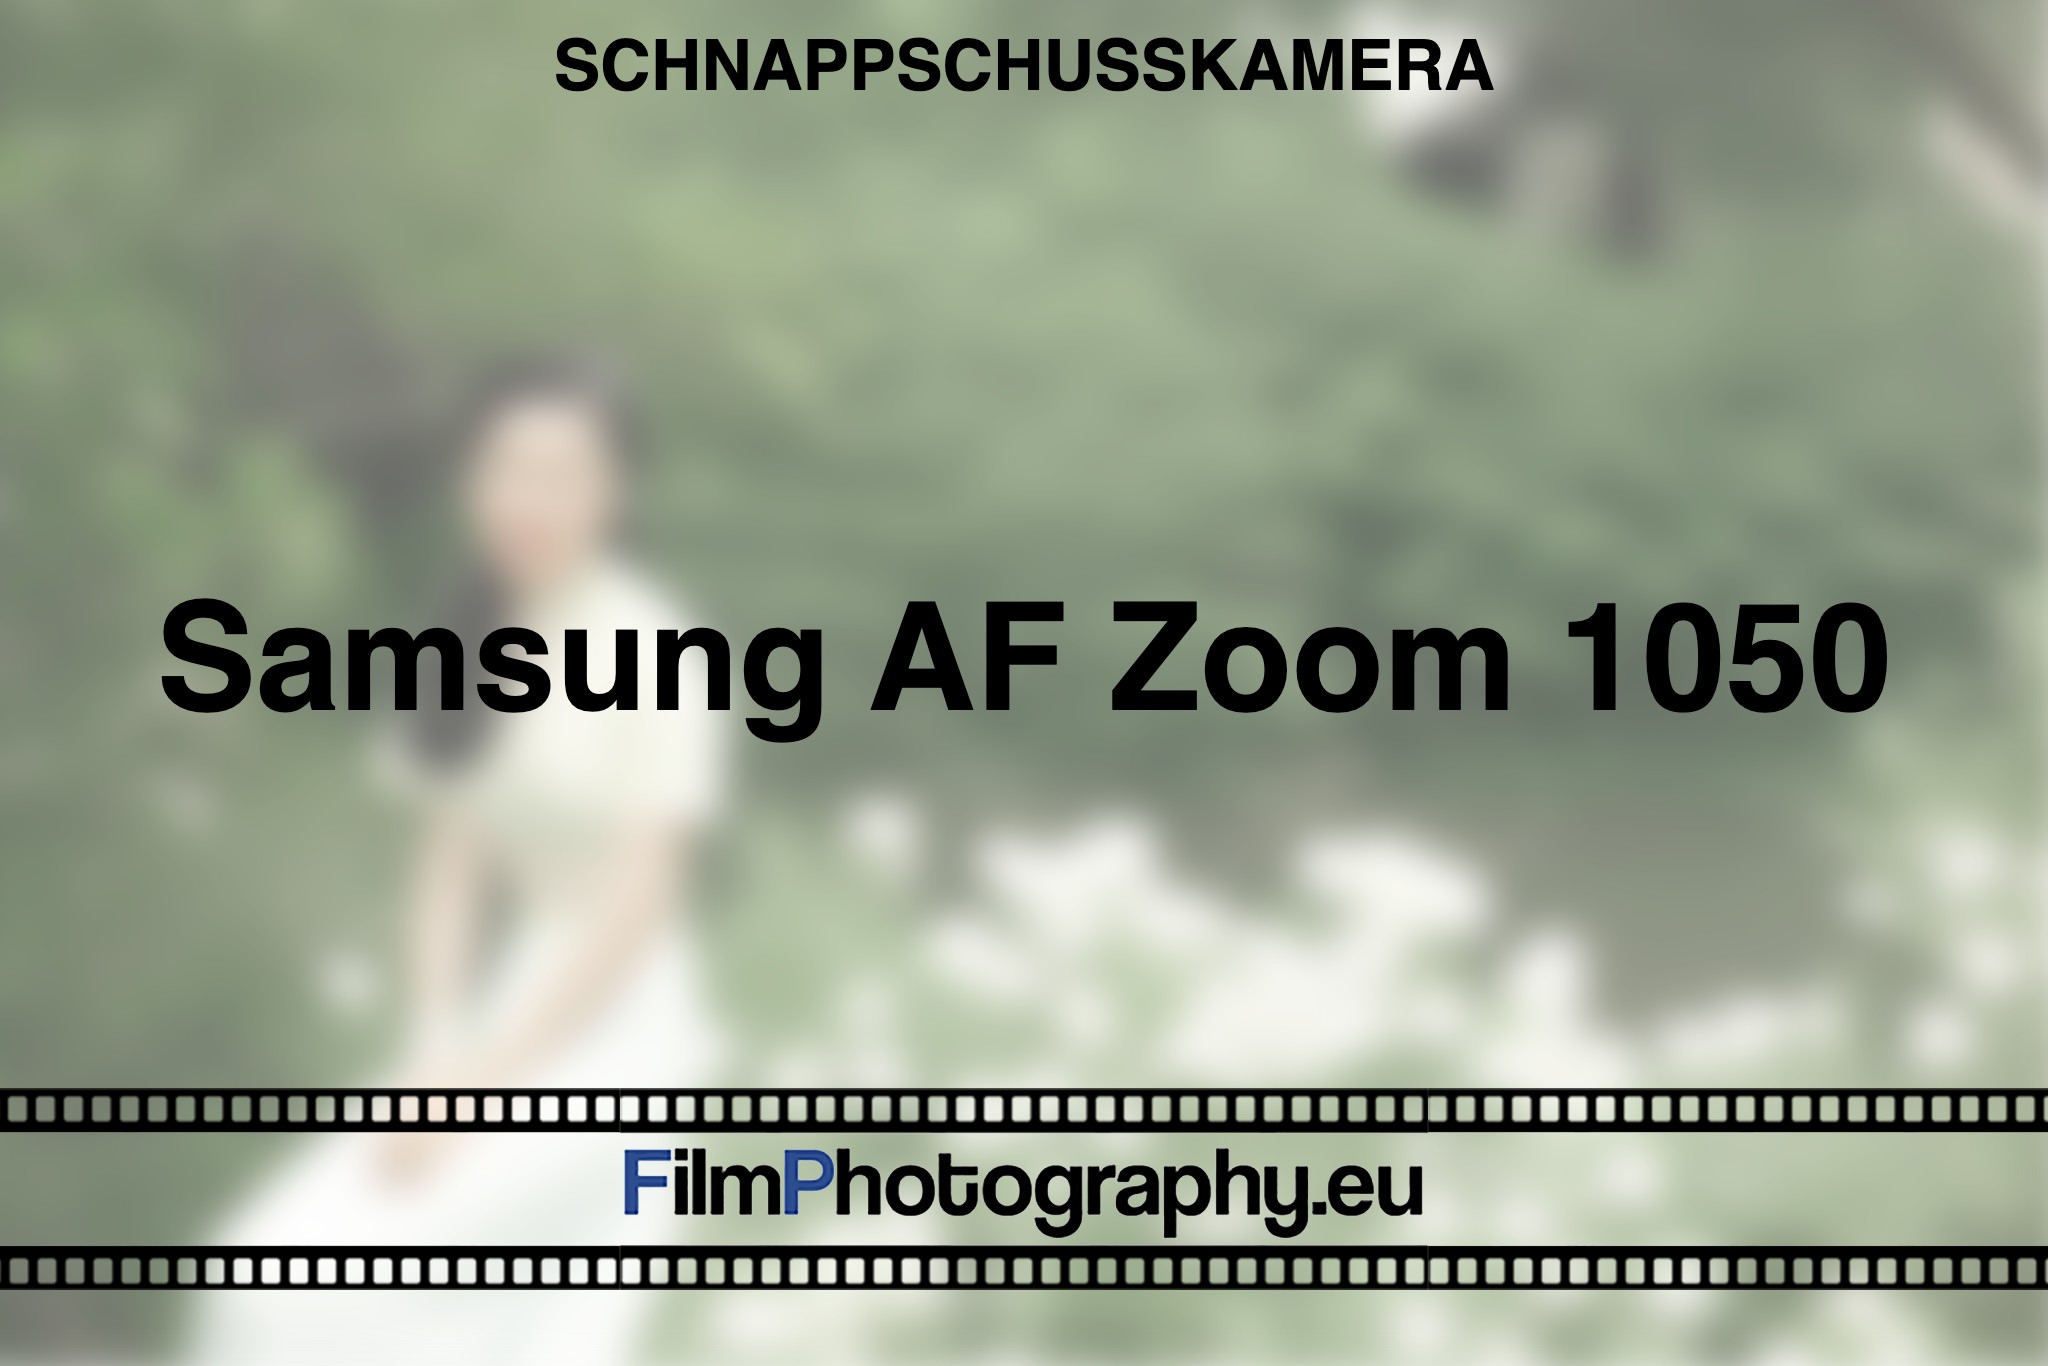 samsung-af-zoom-1050-schnappschusskamera-bnv